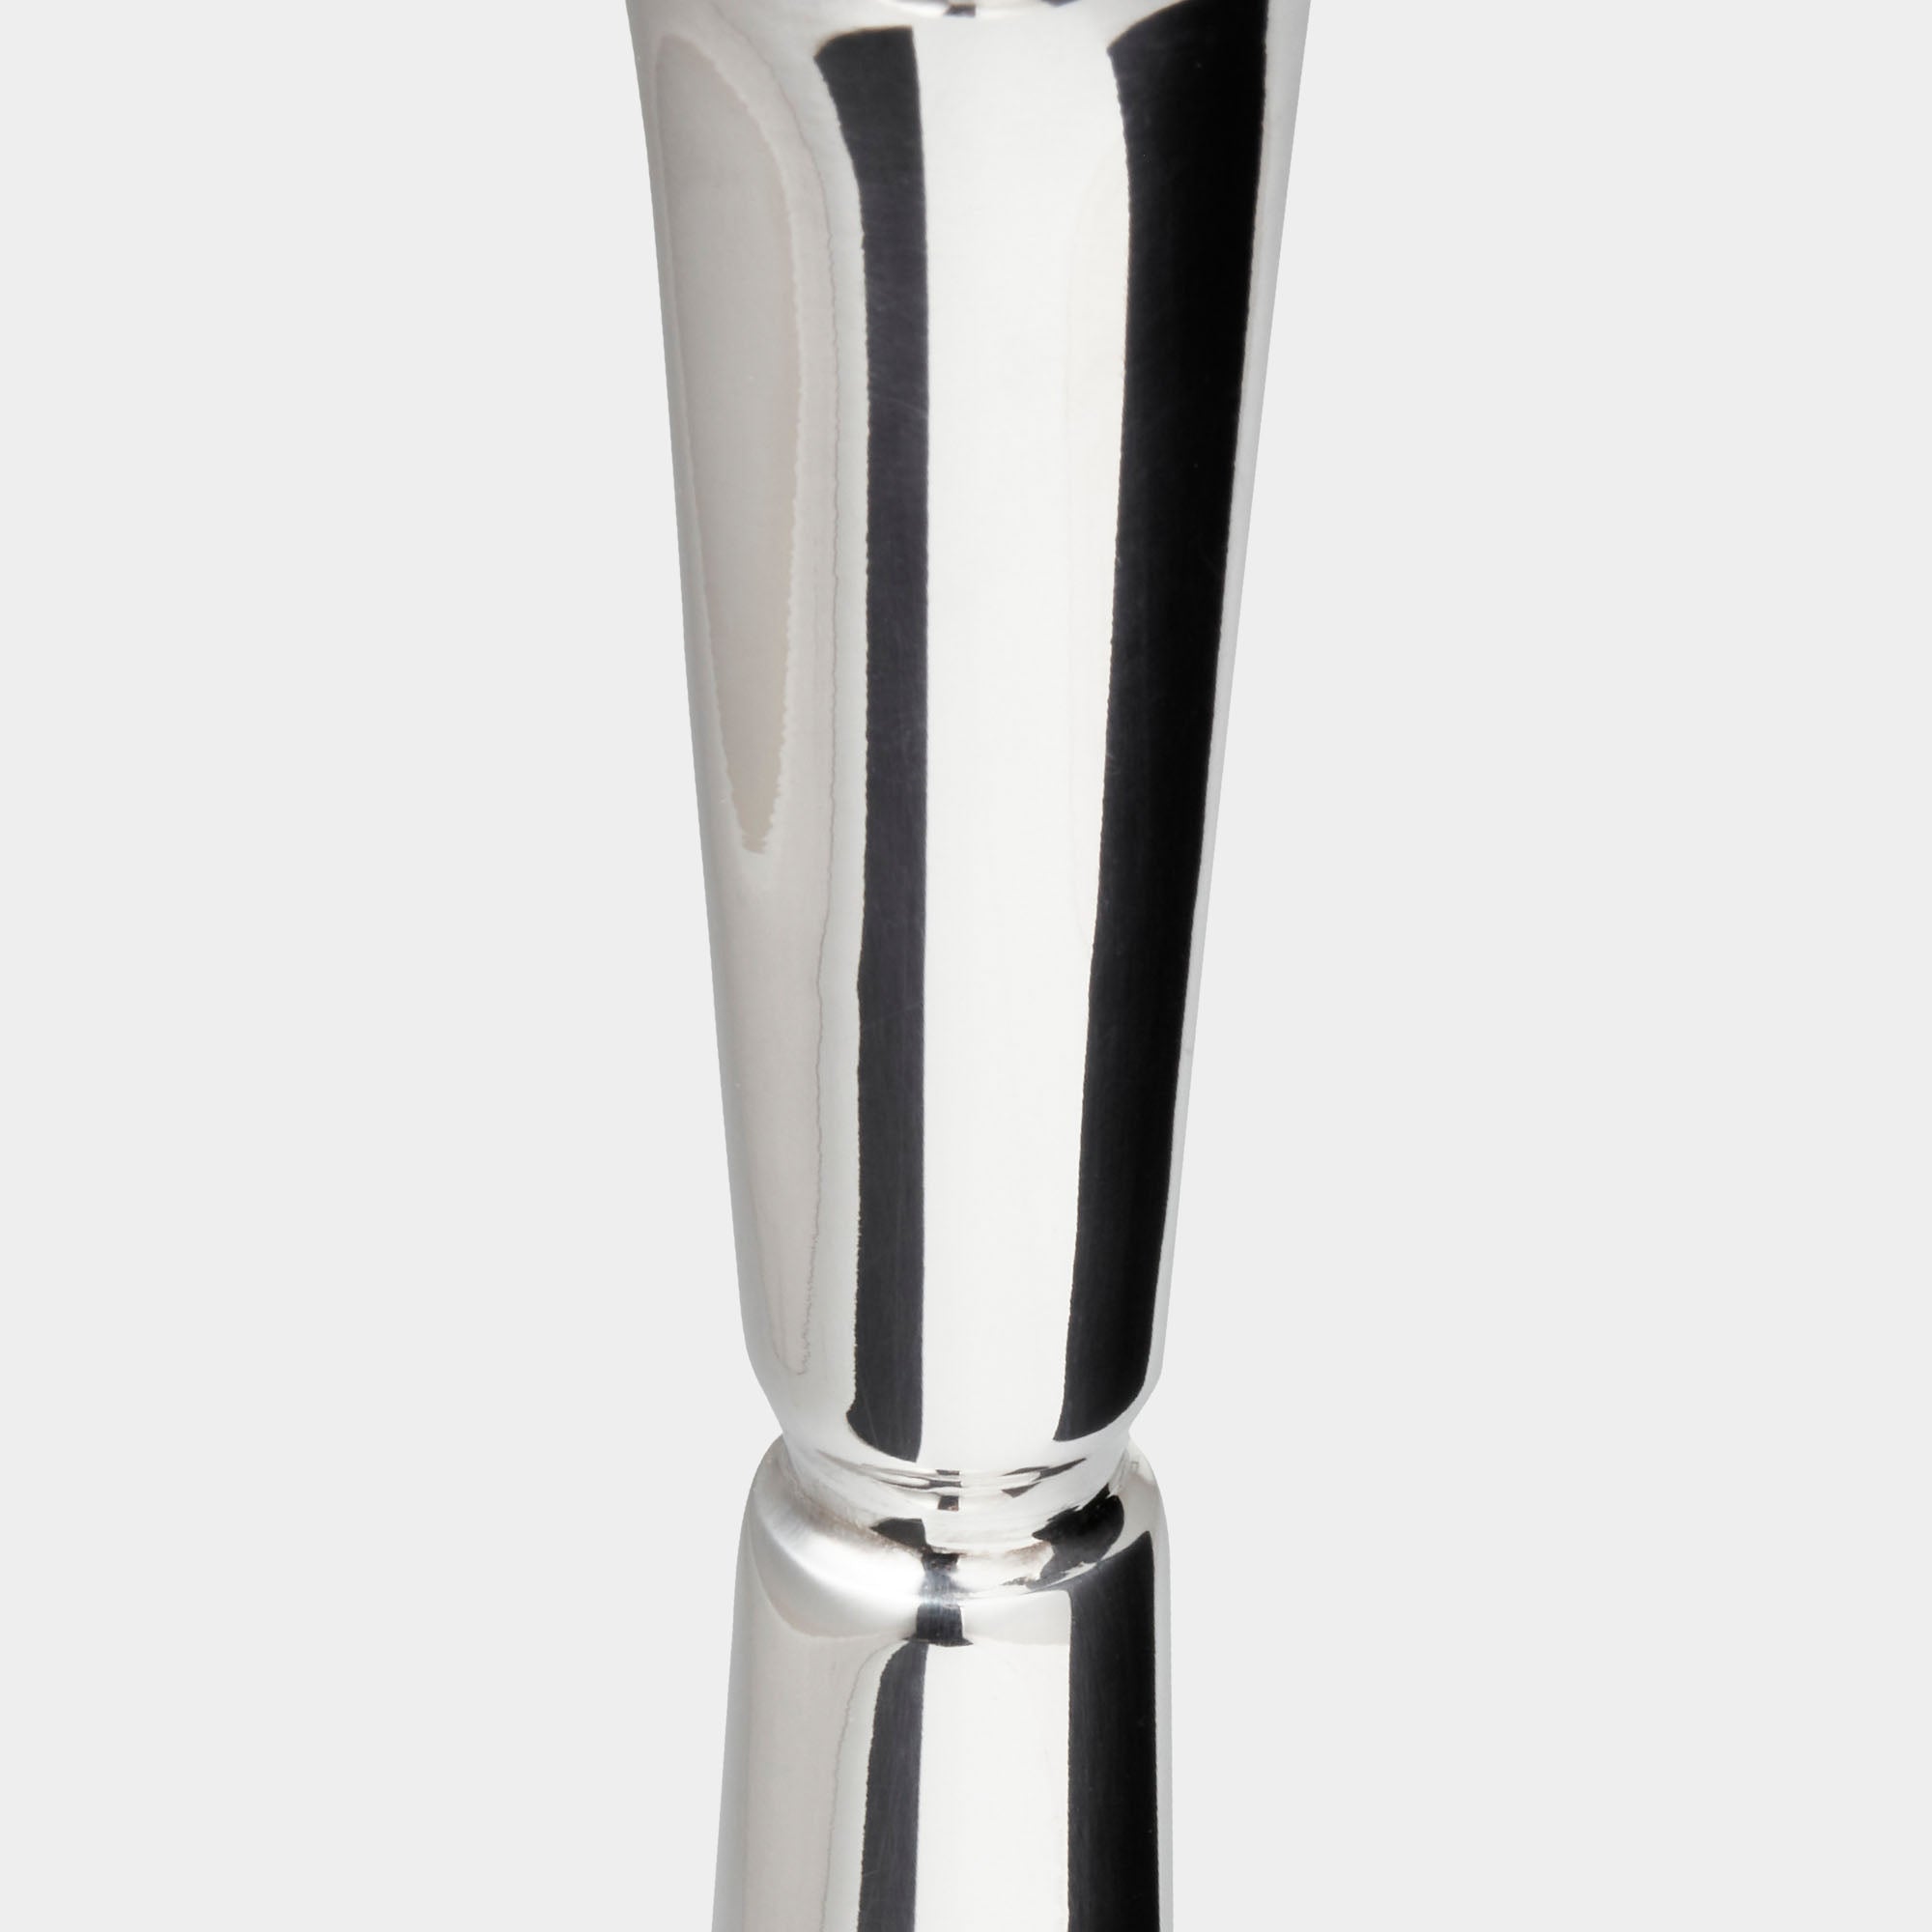 Luxus Silberleuchter: 20 cm Höhe & 162g mit Silberplatte-Fuß - Bild 2